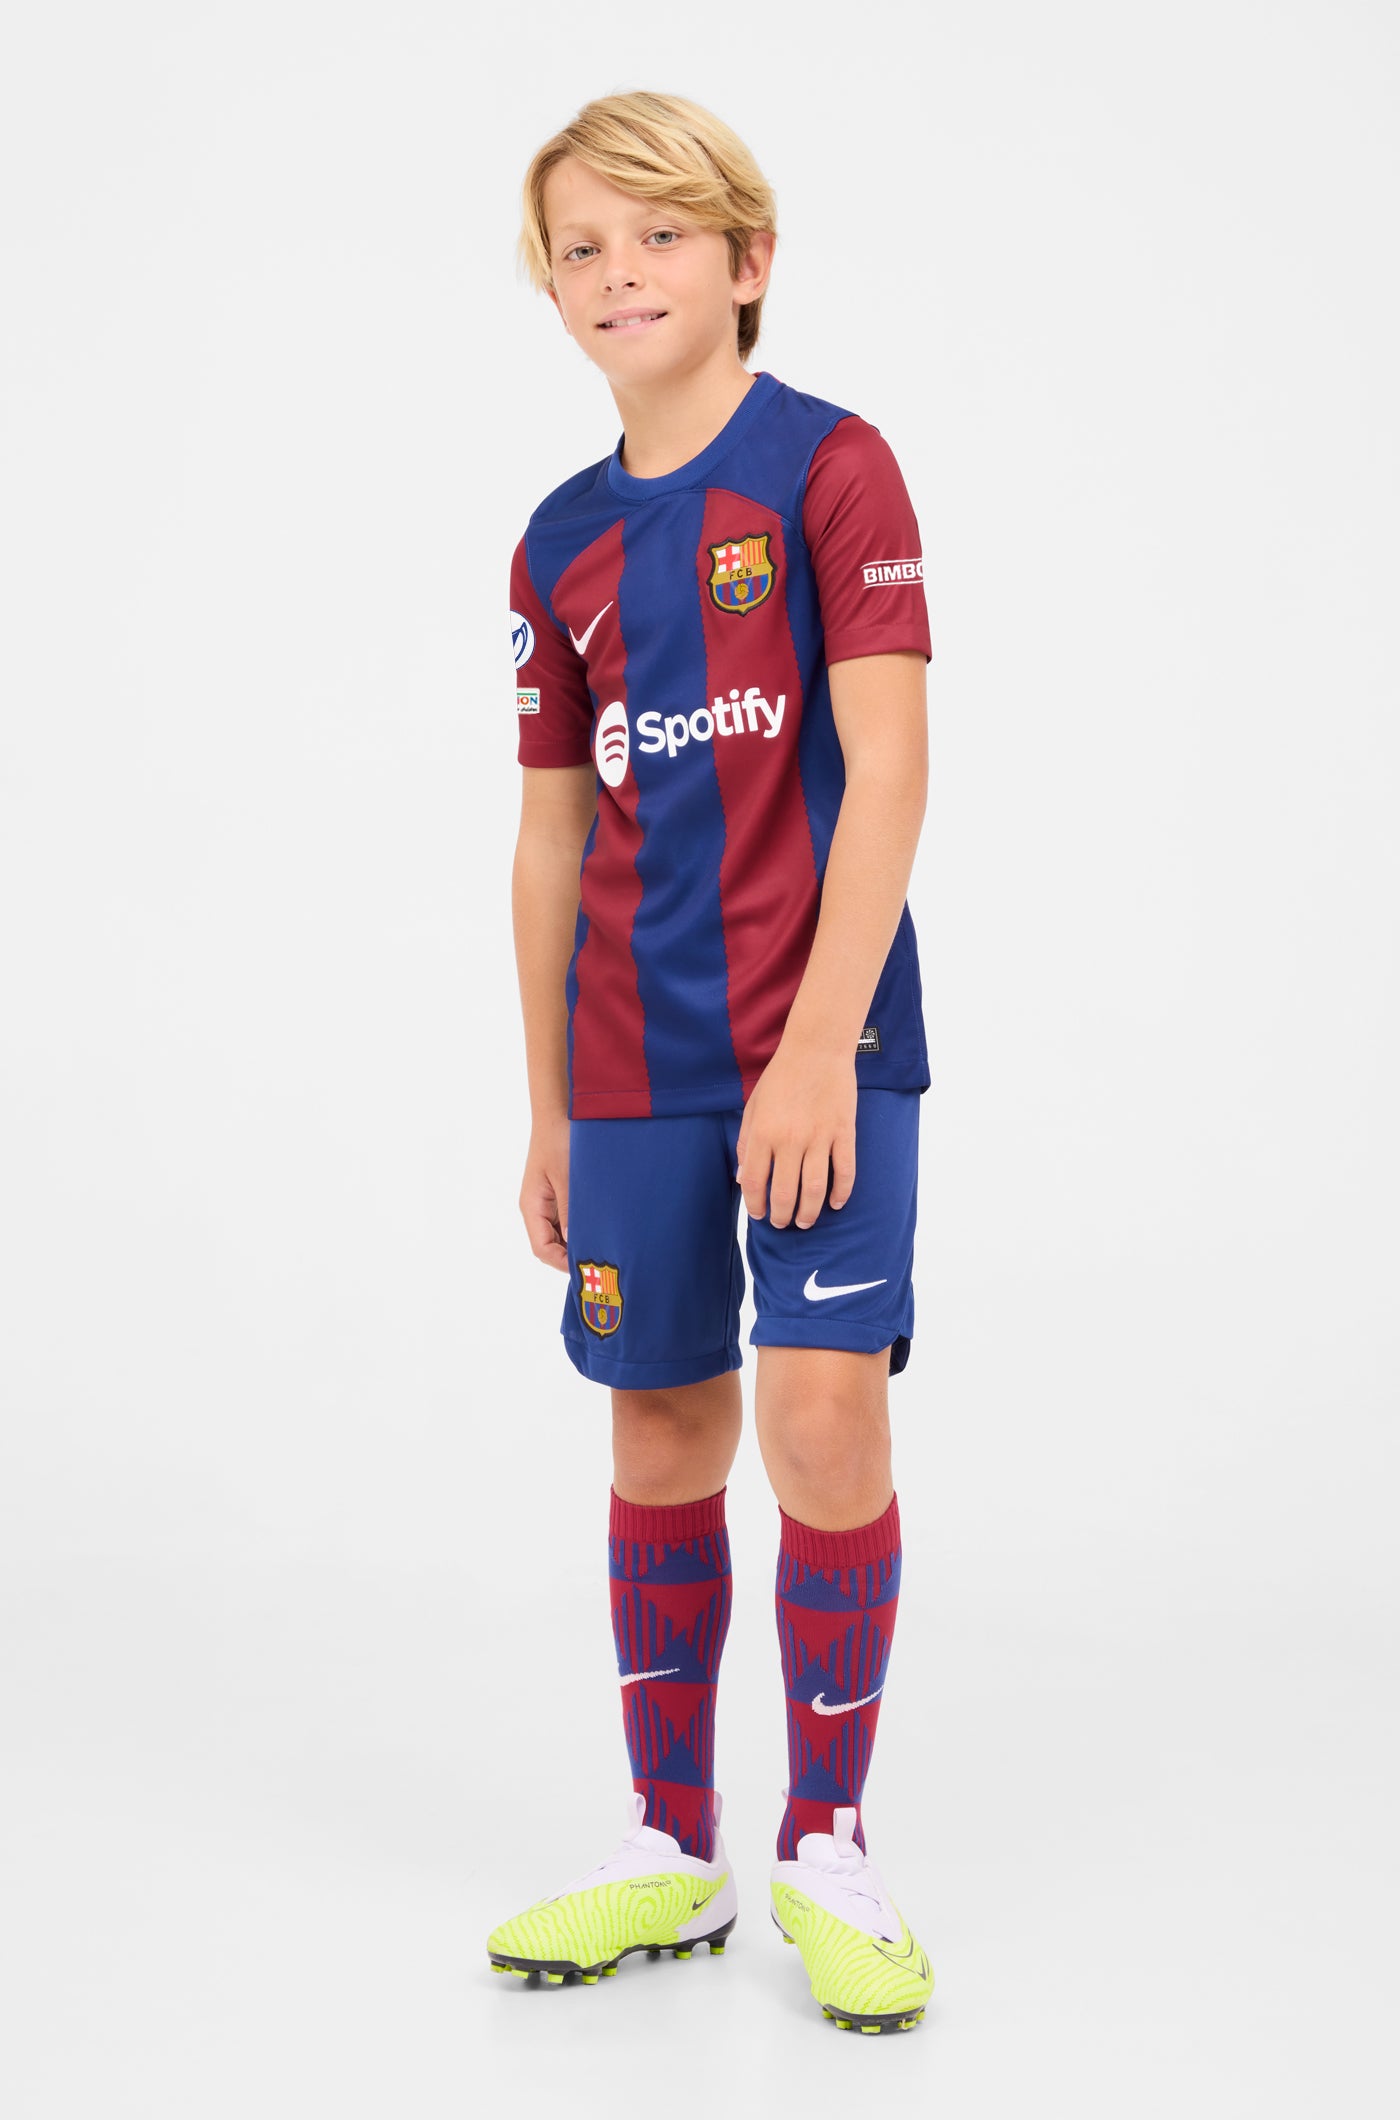 UWCL Samarreta primer equipament FC Barcelona 23/24 - Júnior 